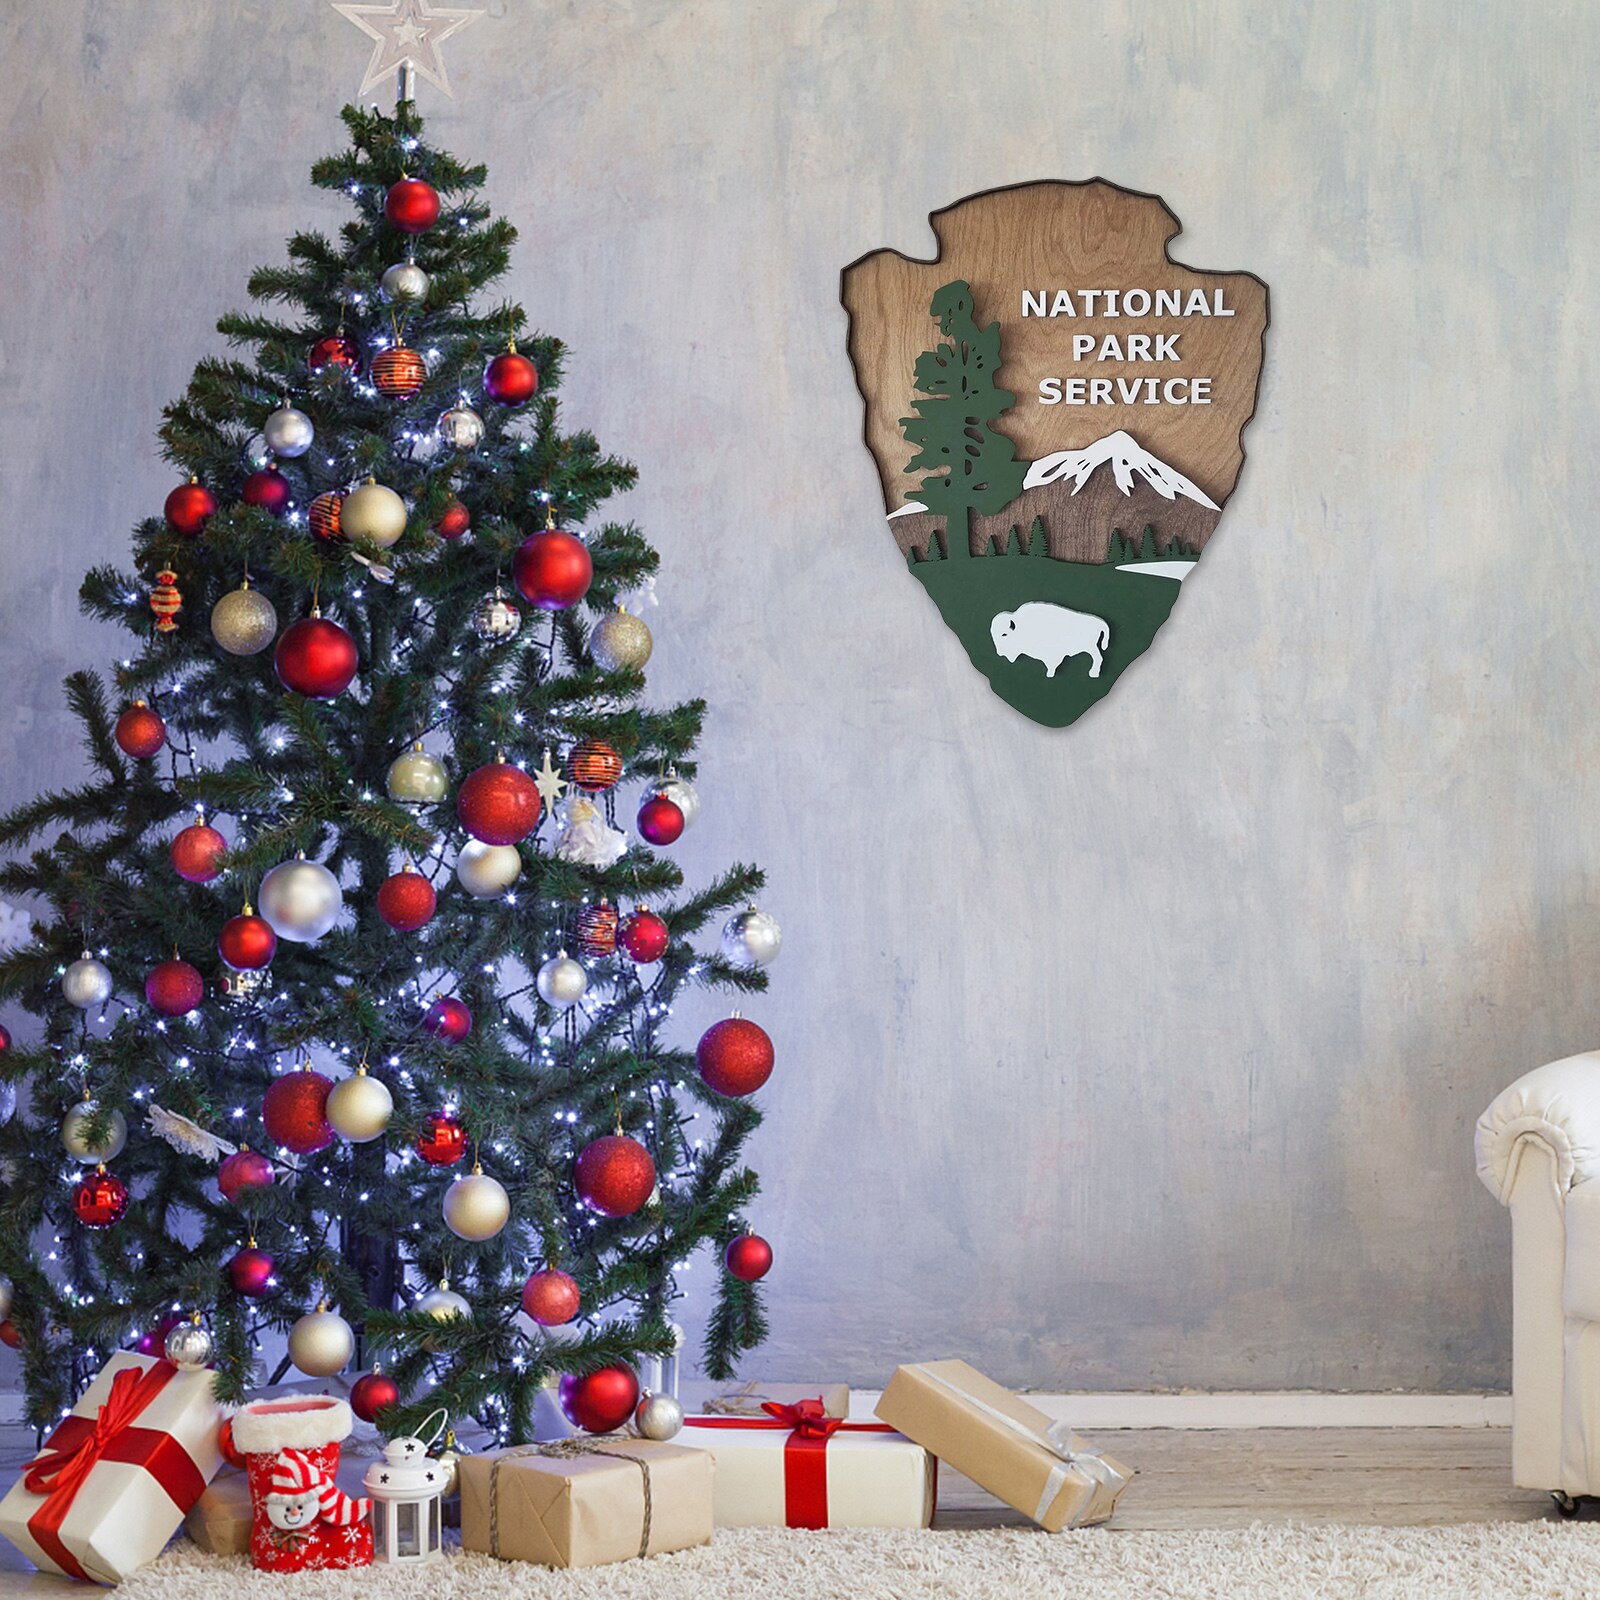 National Park Service Pijlpunt Houten Borden Rustieke Muur Opknoping Ornamenten Home Decoratie Voor